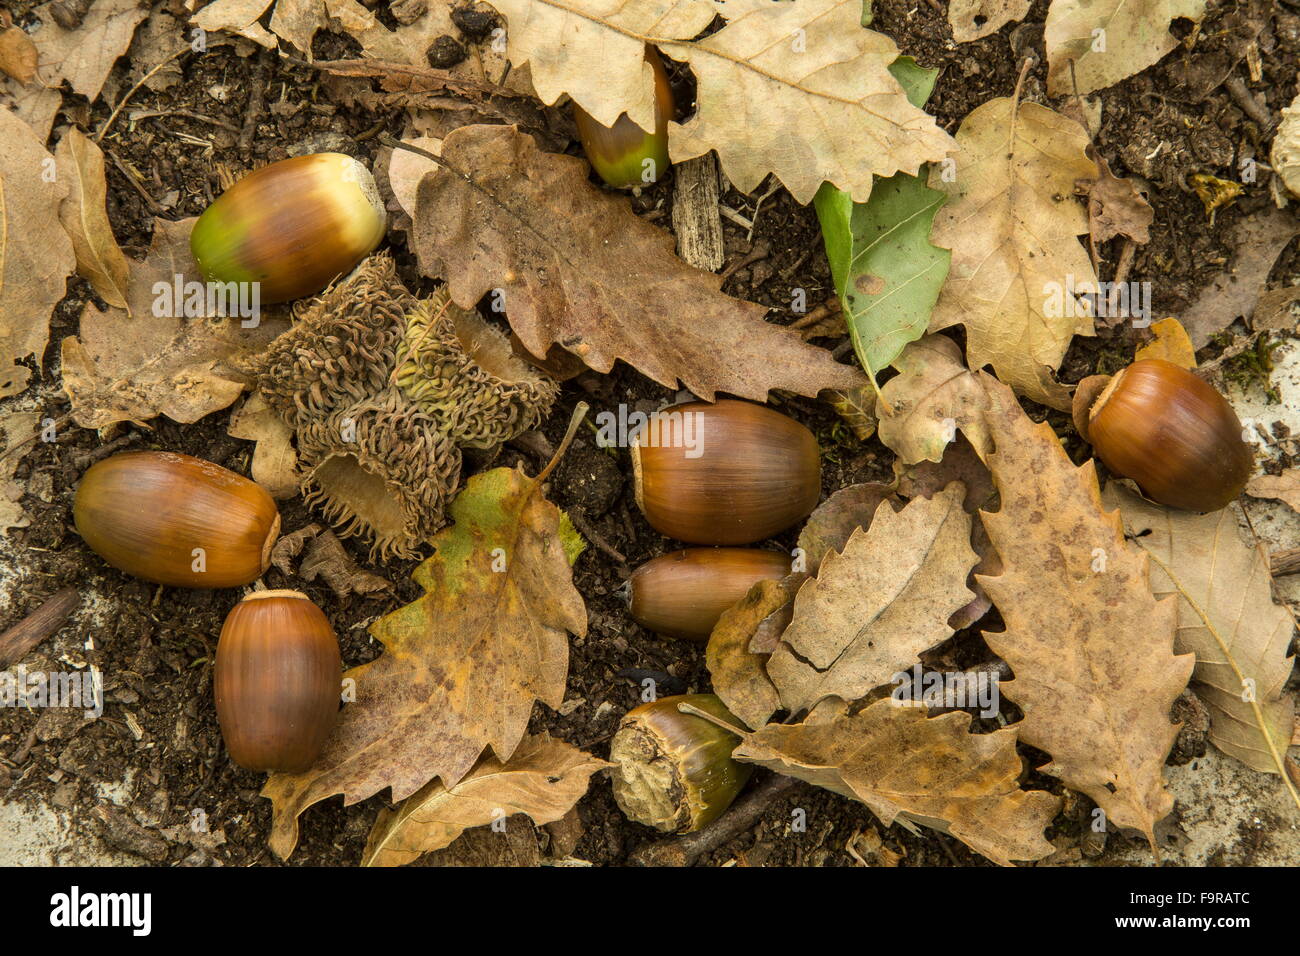 Türkei-Eiche, Quercus Cerris gefallen, Blätter, Eicheln und Eichel-Cups. Griechenland Stockfoto